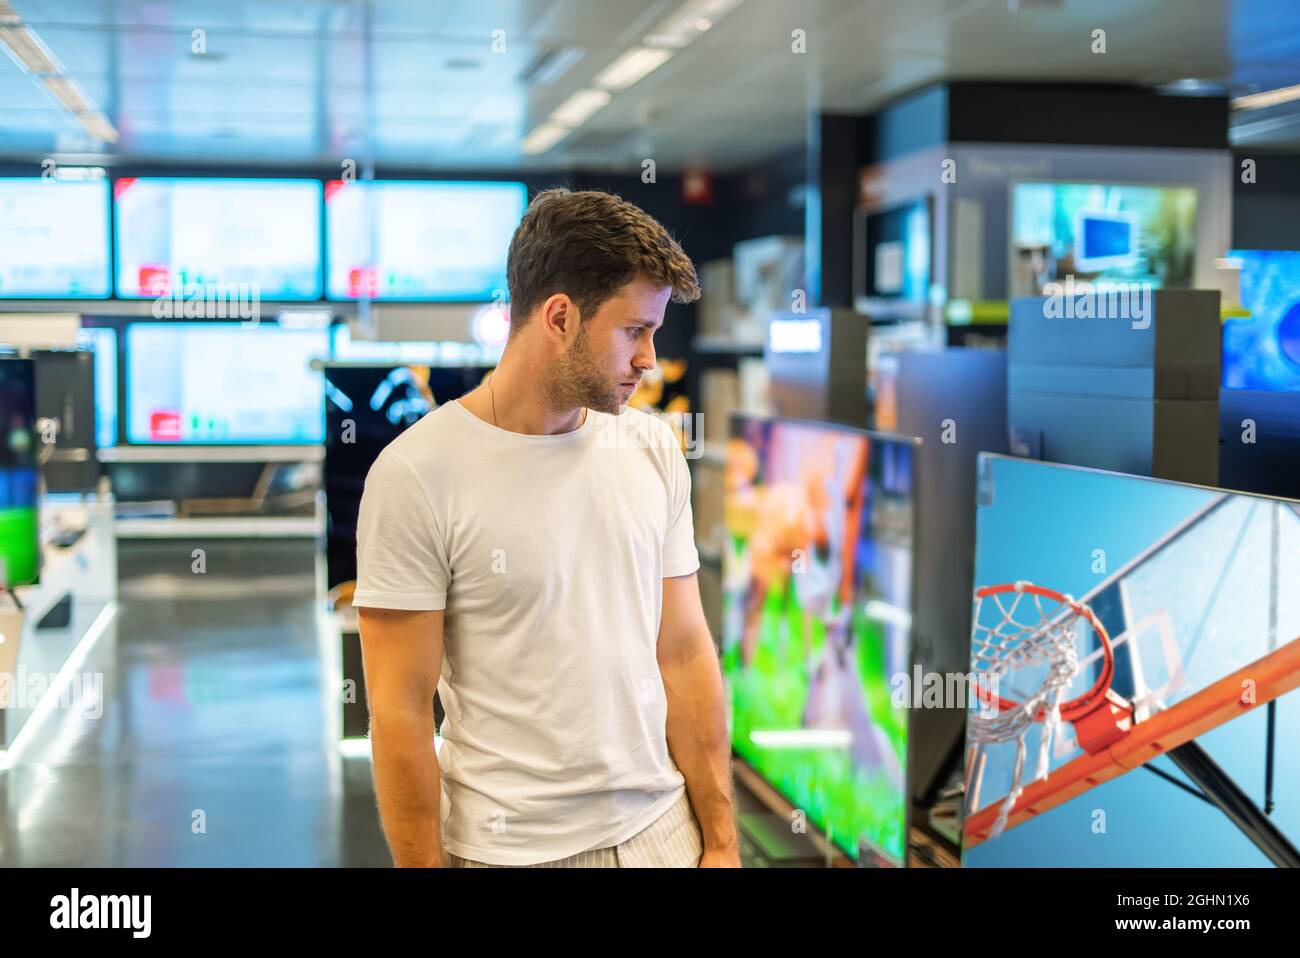 Interessierter junger männlicher Käufer, der einen modernen Smart-Flachbildfernseher mit hoher Auflösung ansieht, während er in einem geräumigen Elektronikgeschäft Waren auswählt Stockfoto